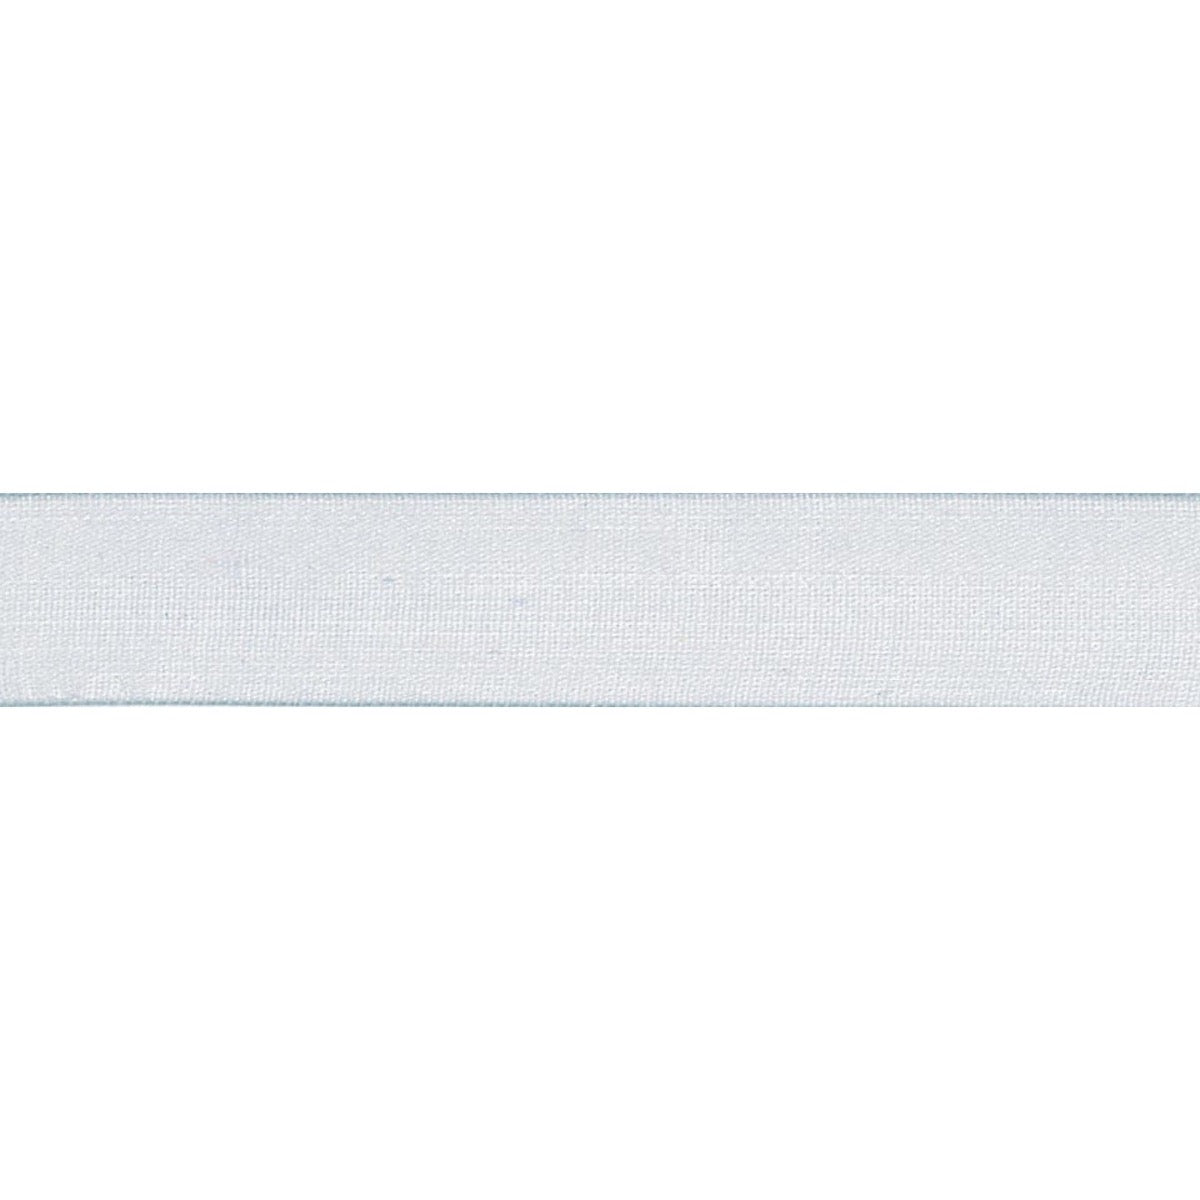 Super Sheer Ribbon: 10mm: Silver Grey. Price per metre.